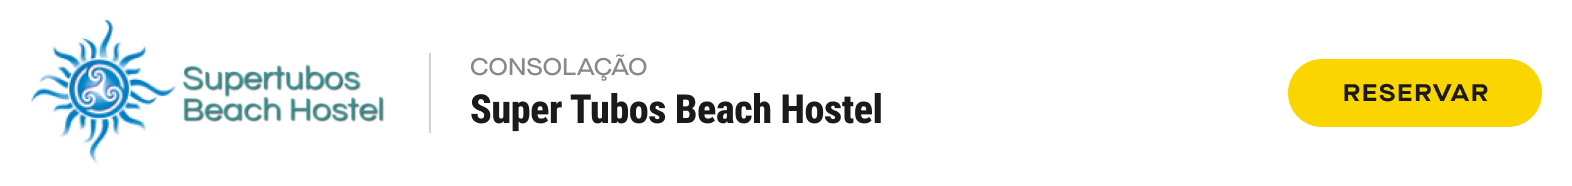 39.Desktop Super Tubos Beach Hostel Consolacao